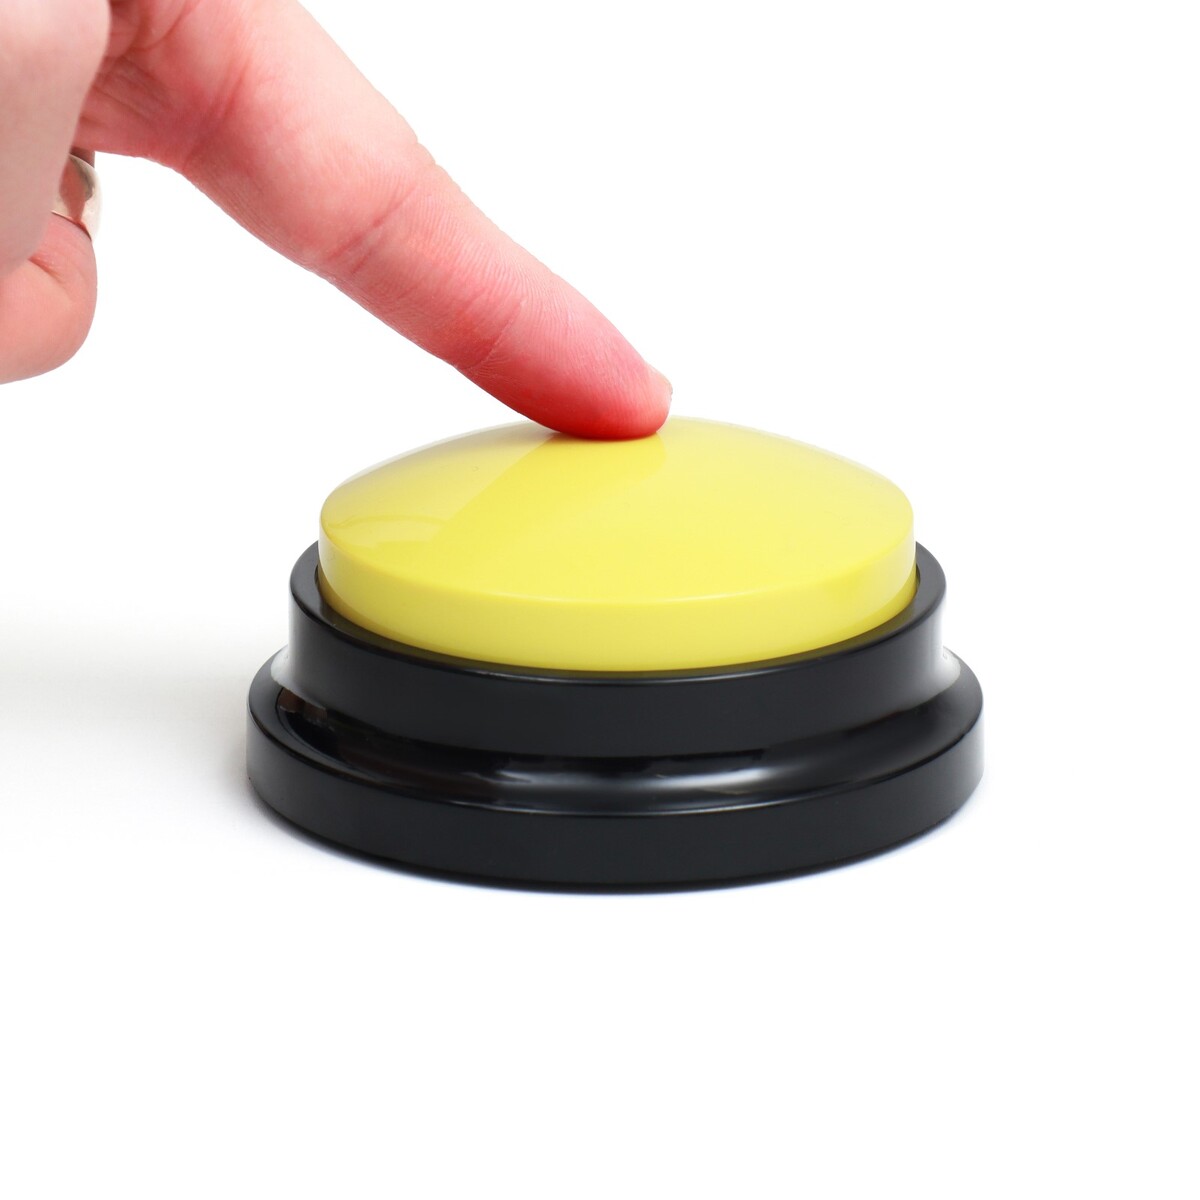 Звуковая кнопка - кликер для дрессировки животных, 9 х 9 х 5, см. желтая